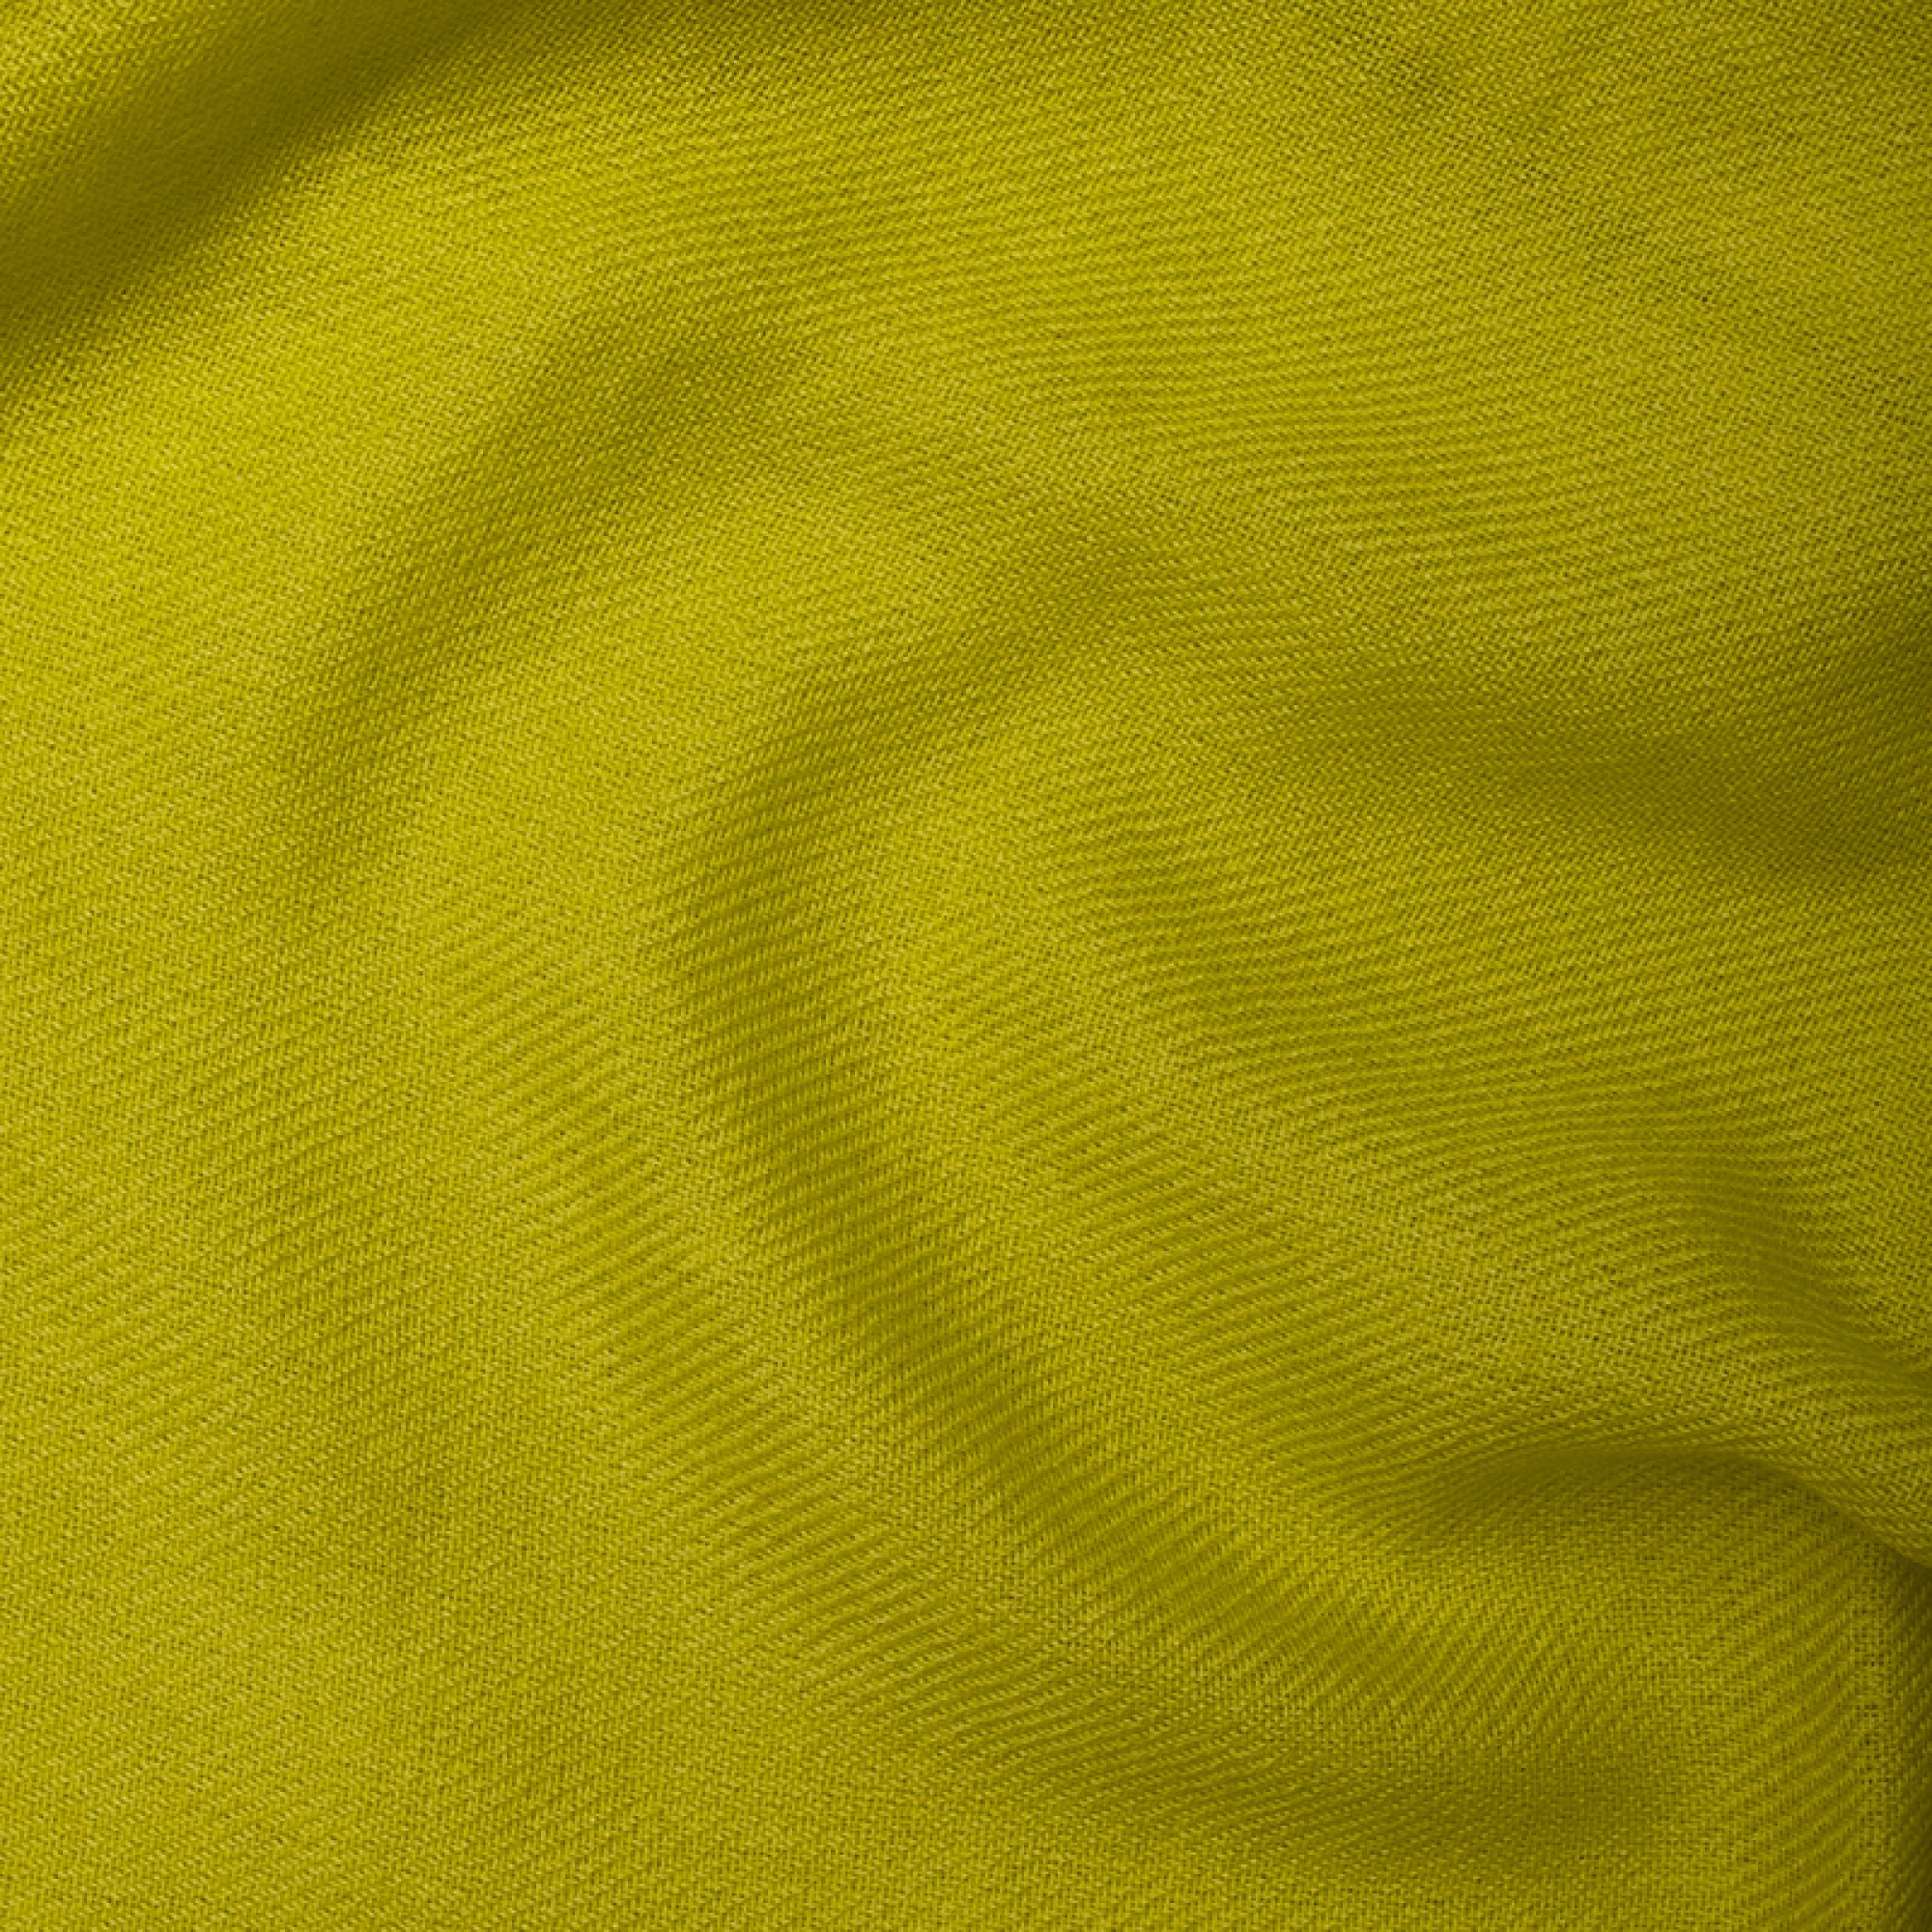 Cachemire pull femme etoles chales niry vert sulfureux 200x90cm